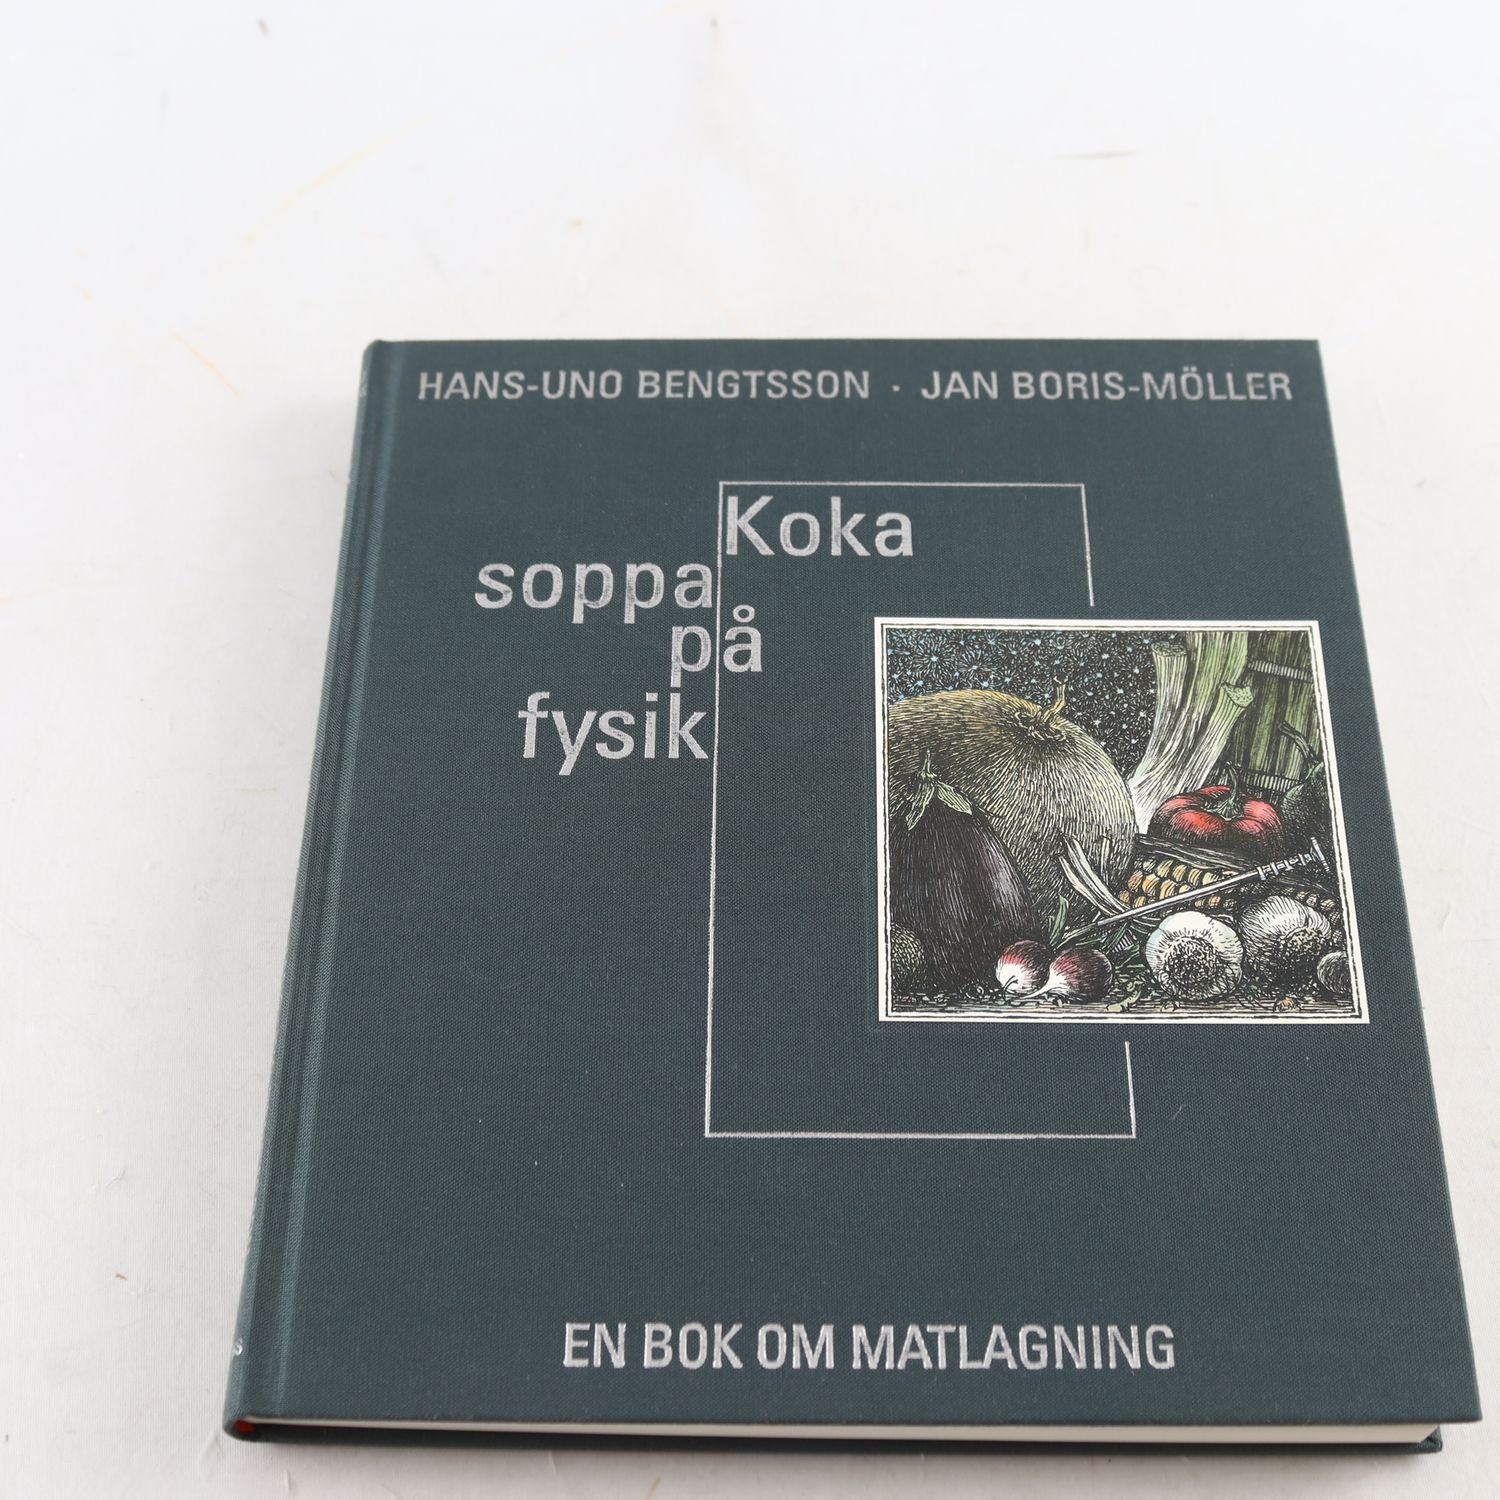 Koka soppa på fysik, Hans-Uno Bengtsson & Jan Boris-Möller